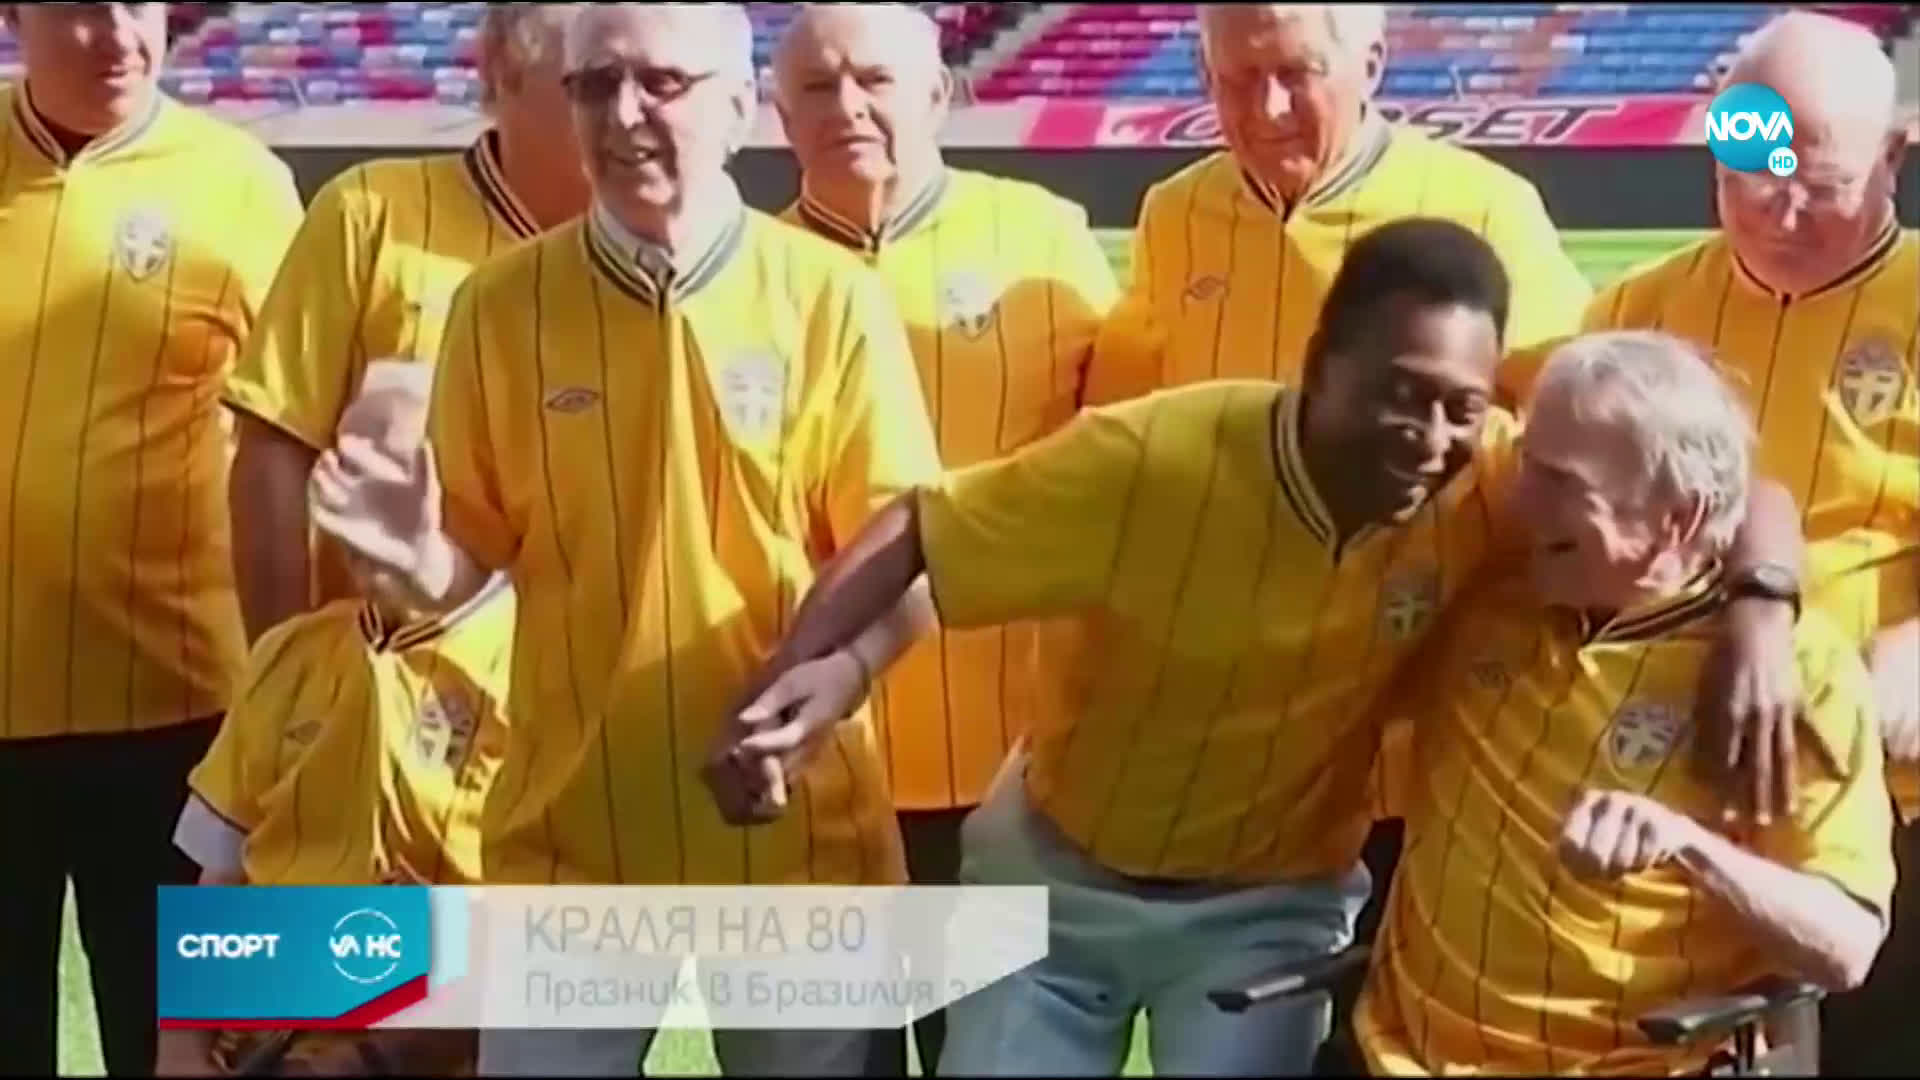 Краля на футбола празнува 80-годишен юбилей